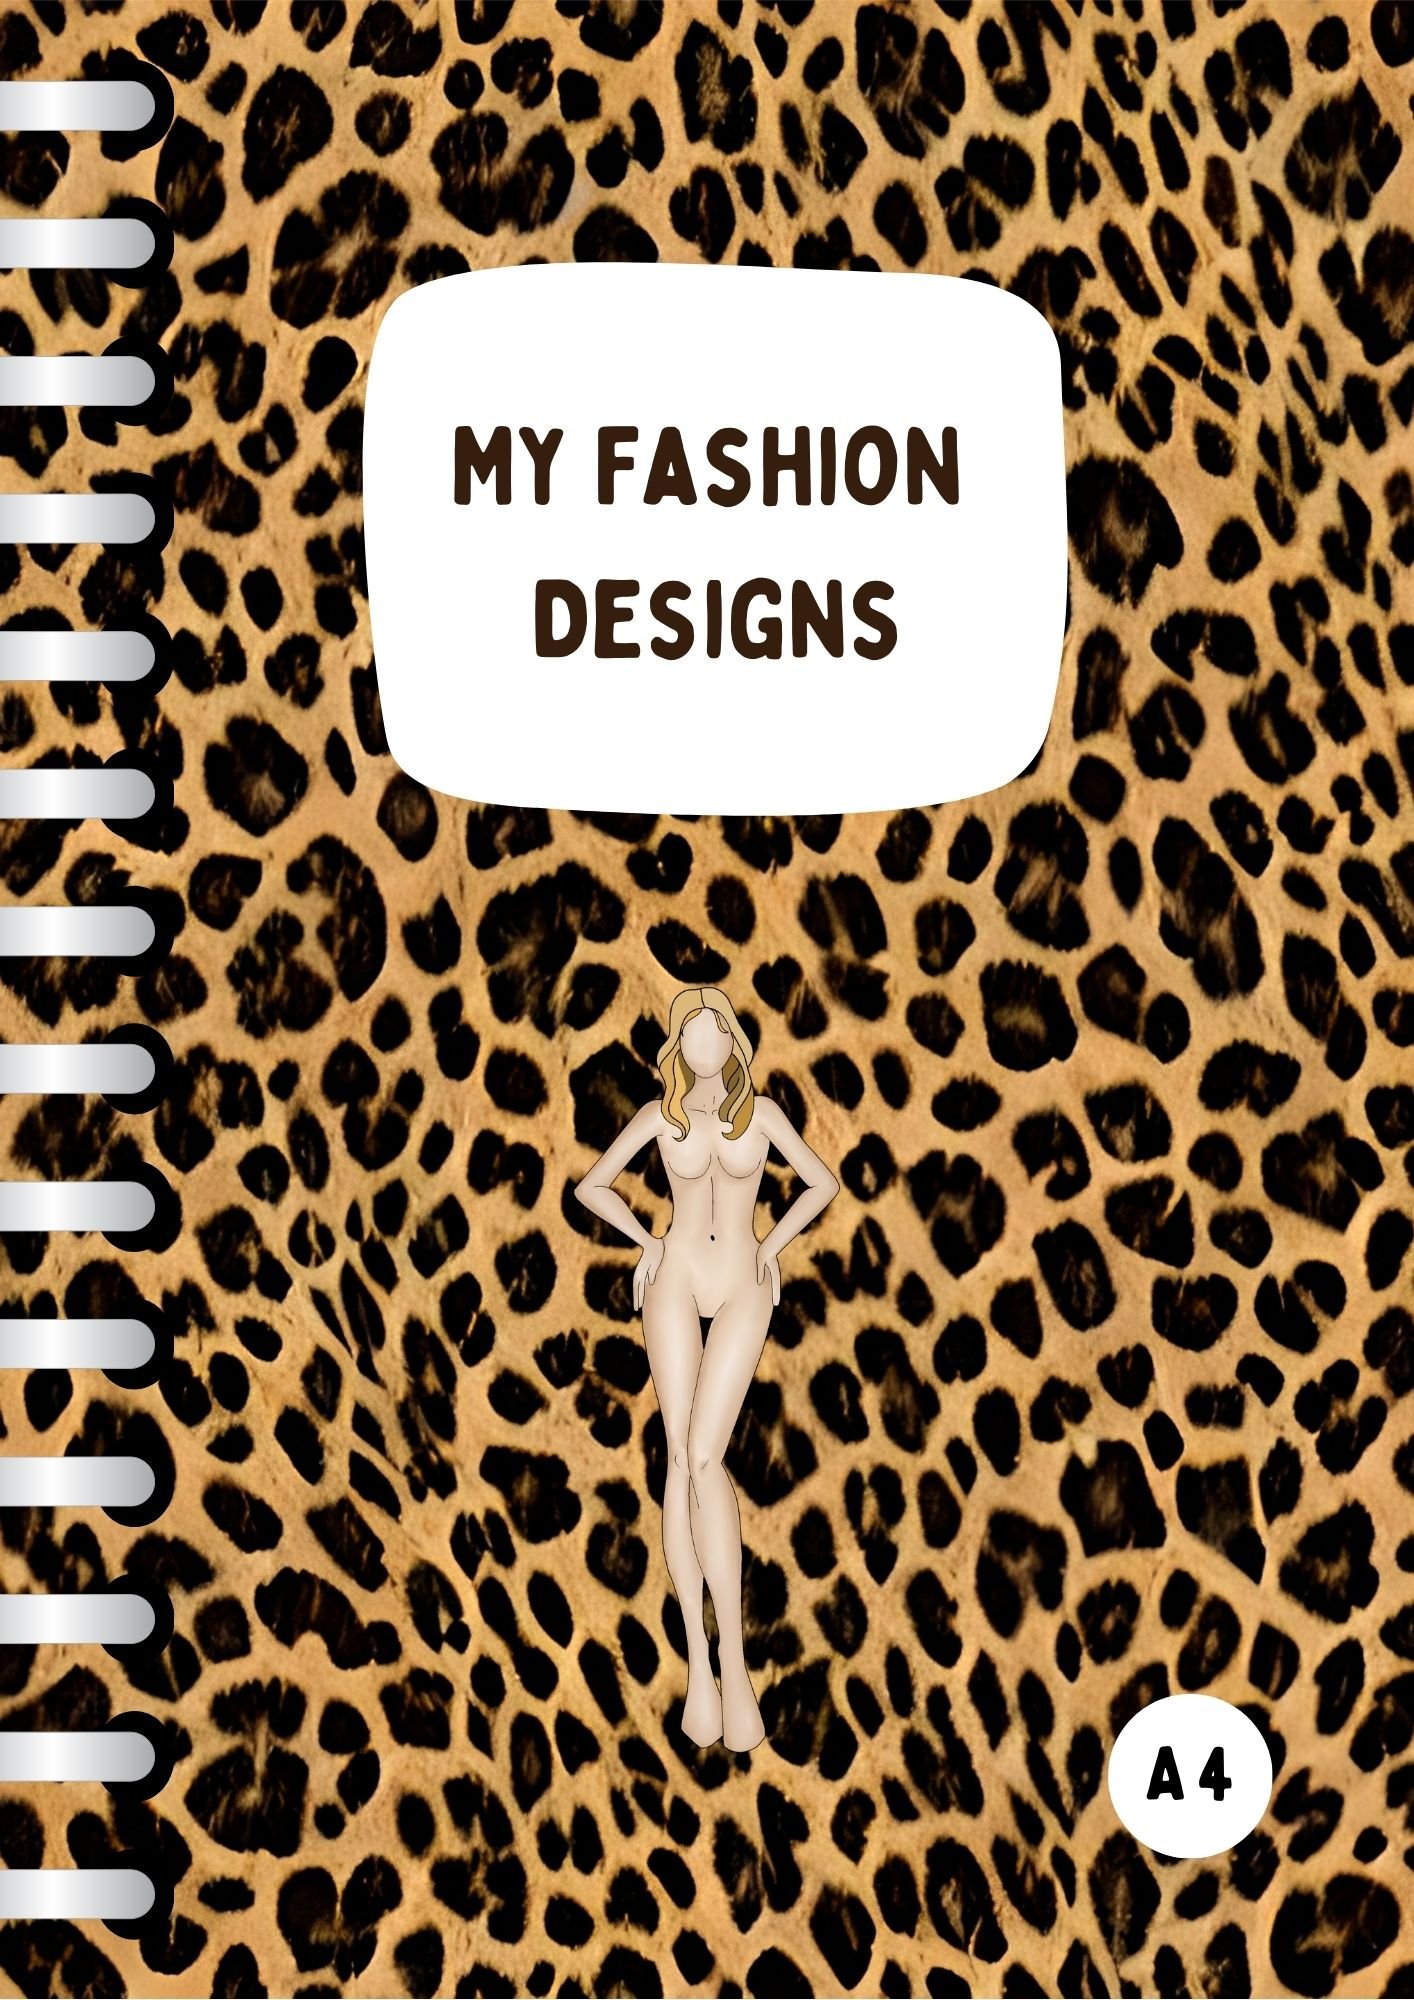 My Fashion Designs